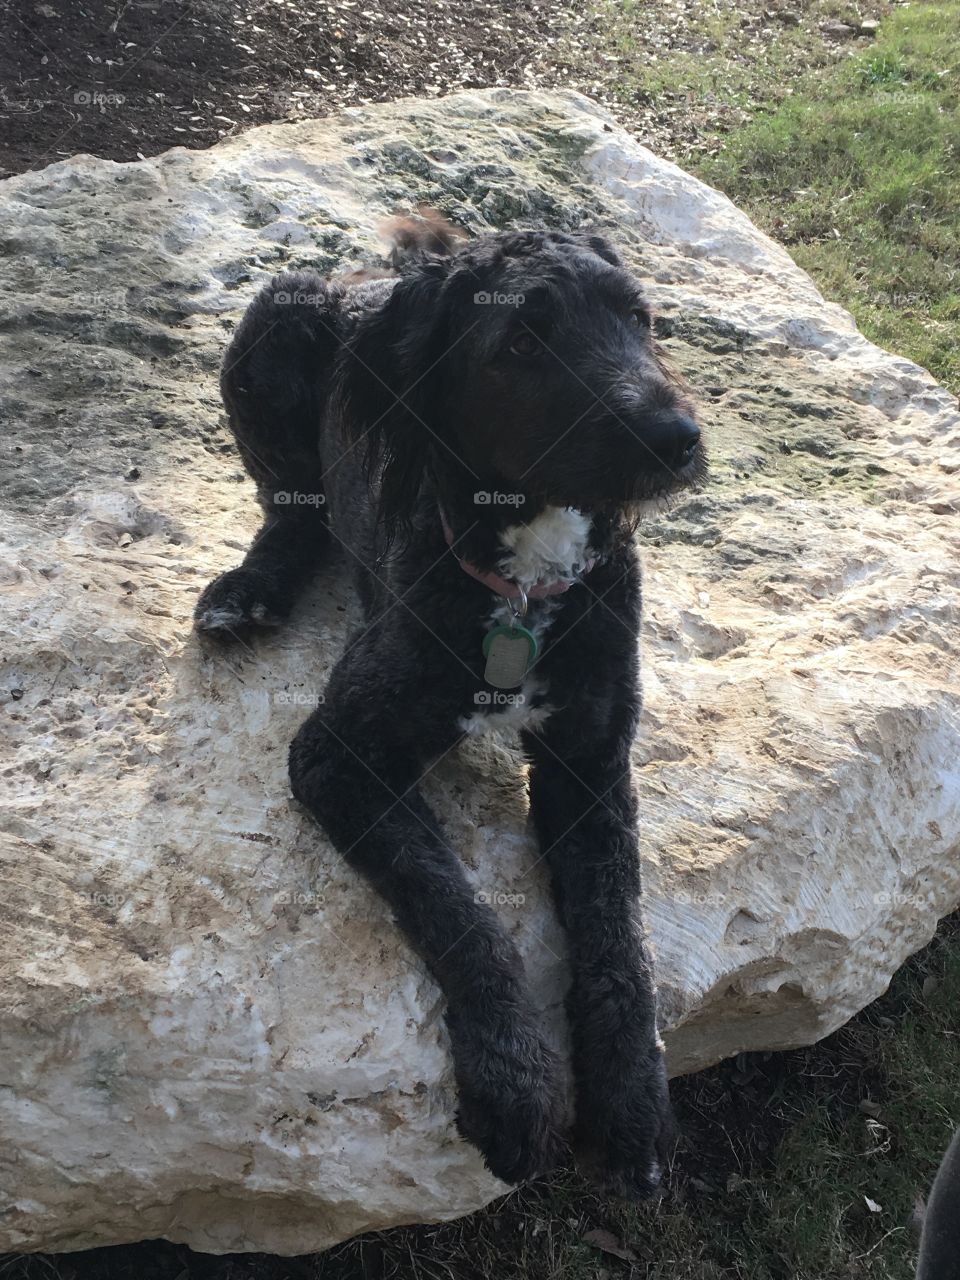 Good pupper on a good rock